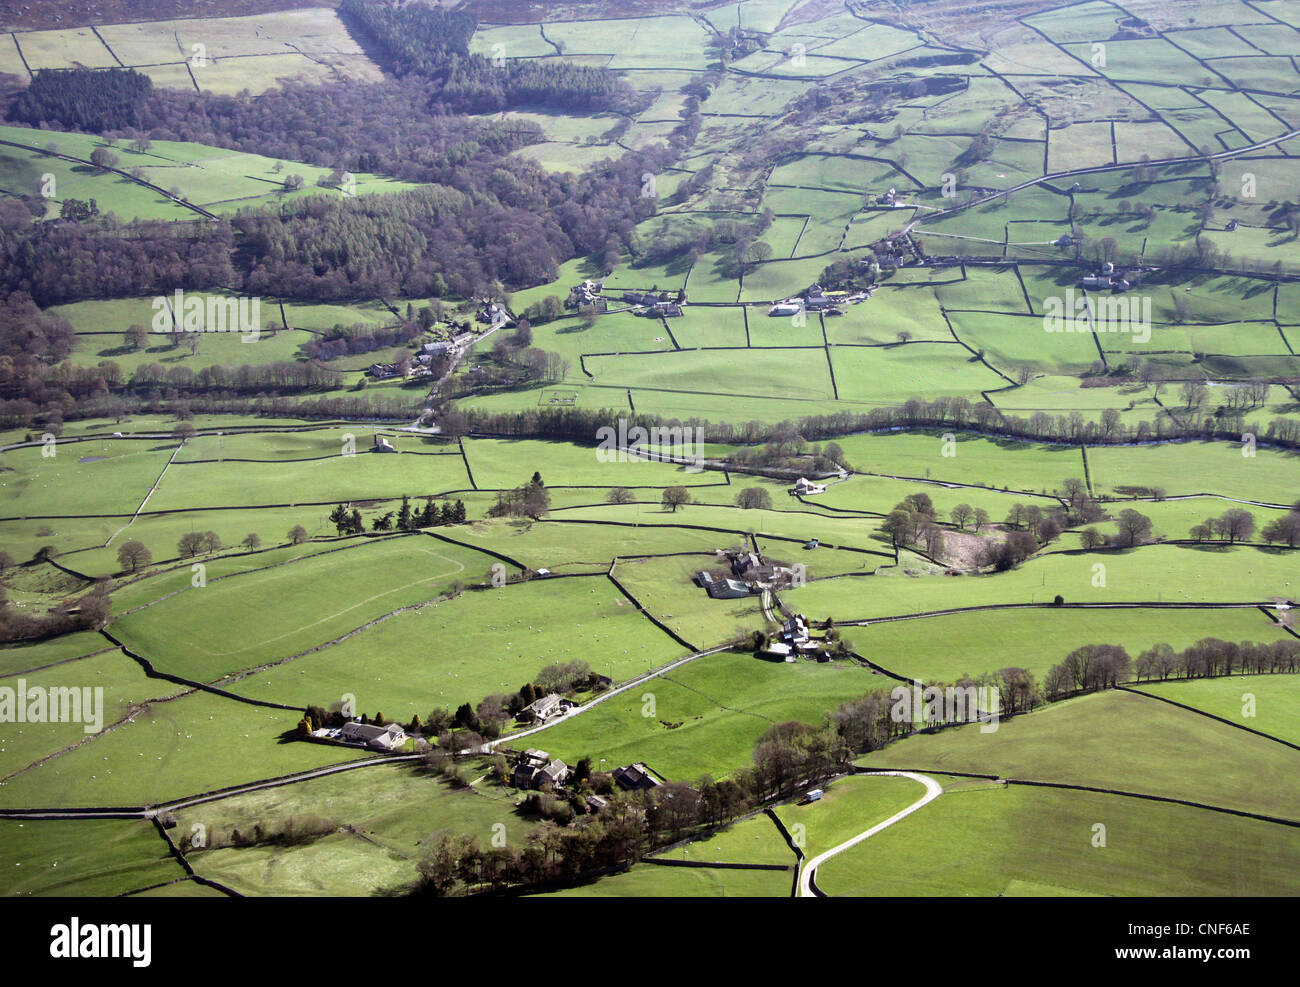 Vue aérienne du paysage rural français avec des champs délimités par des murs en pierre sèche Banque D'Images